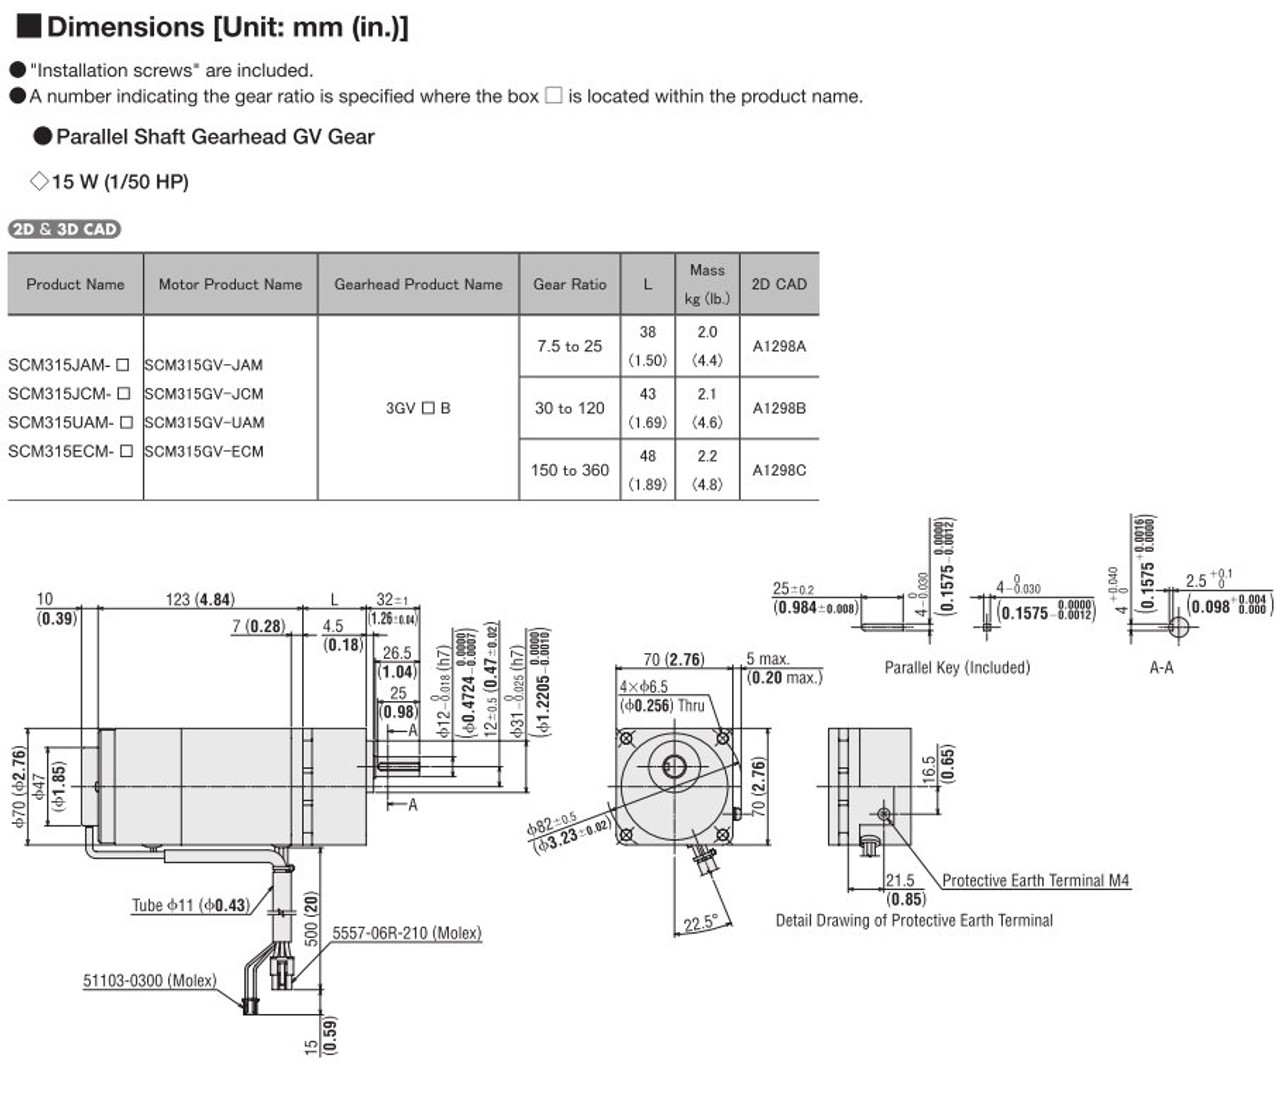 SCM315ECM-100 / DSCD15ECM - Dimensions